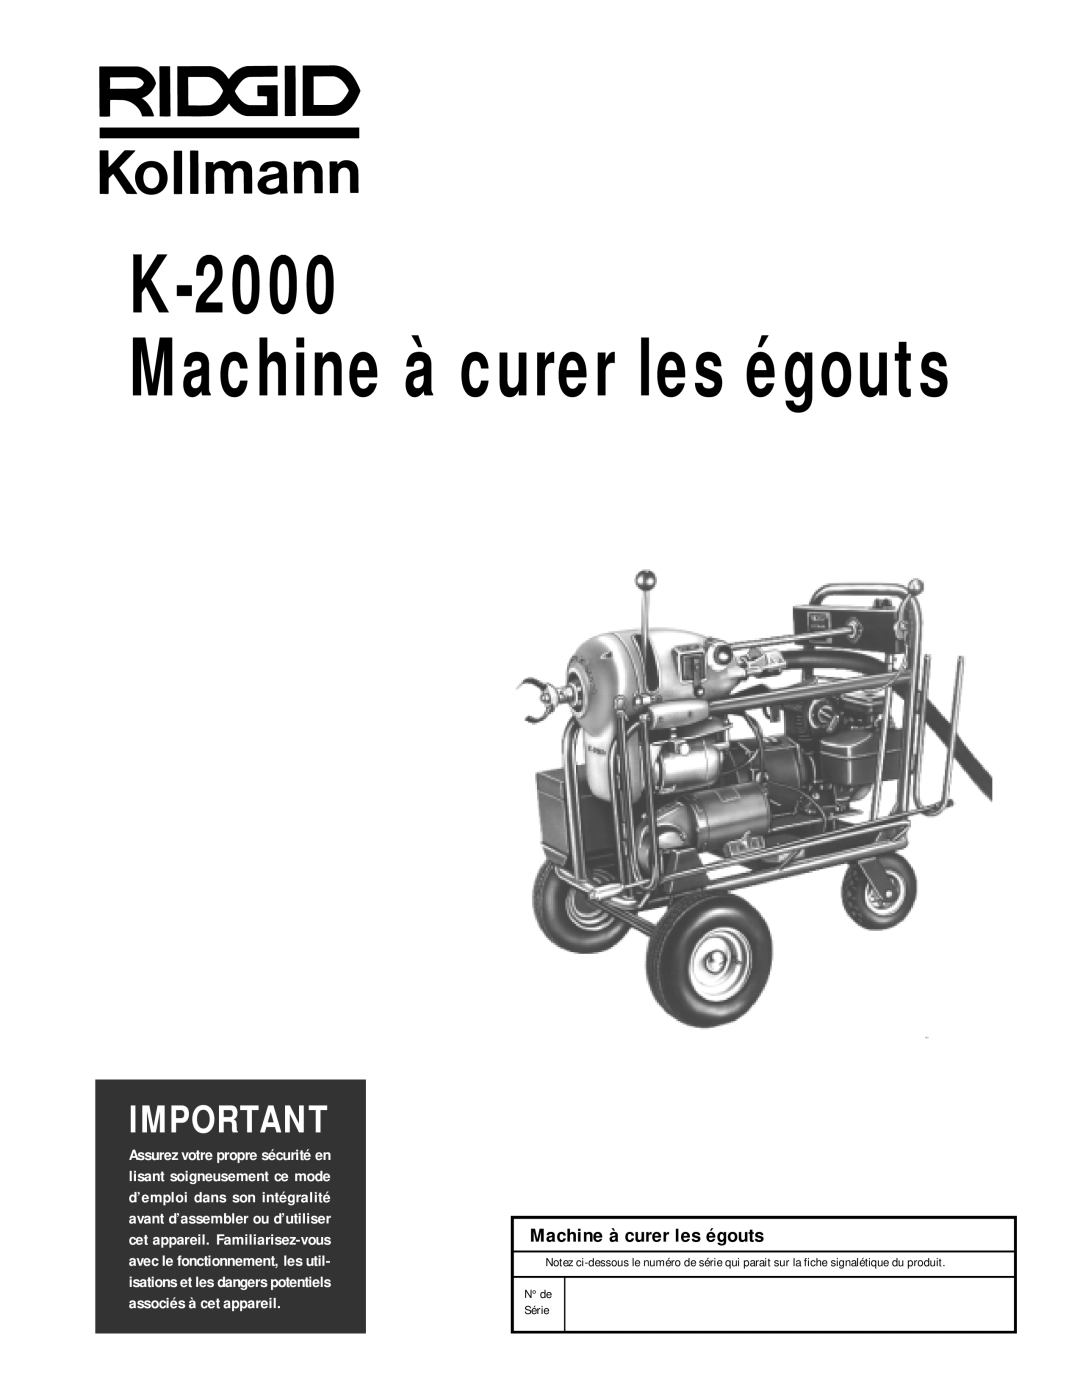 RIDGID K-2000 manual Machine à curer les égouts, N de Série 